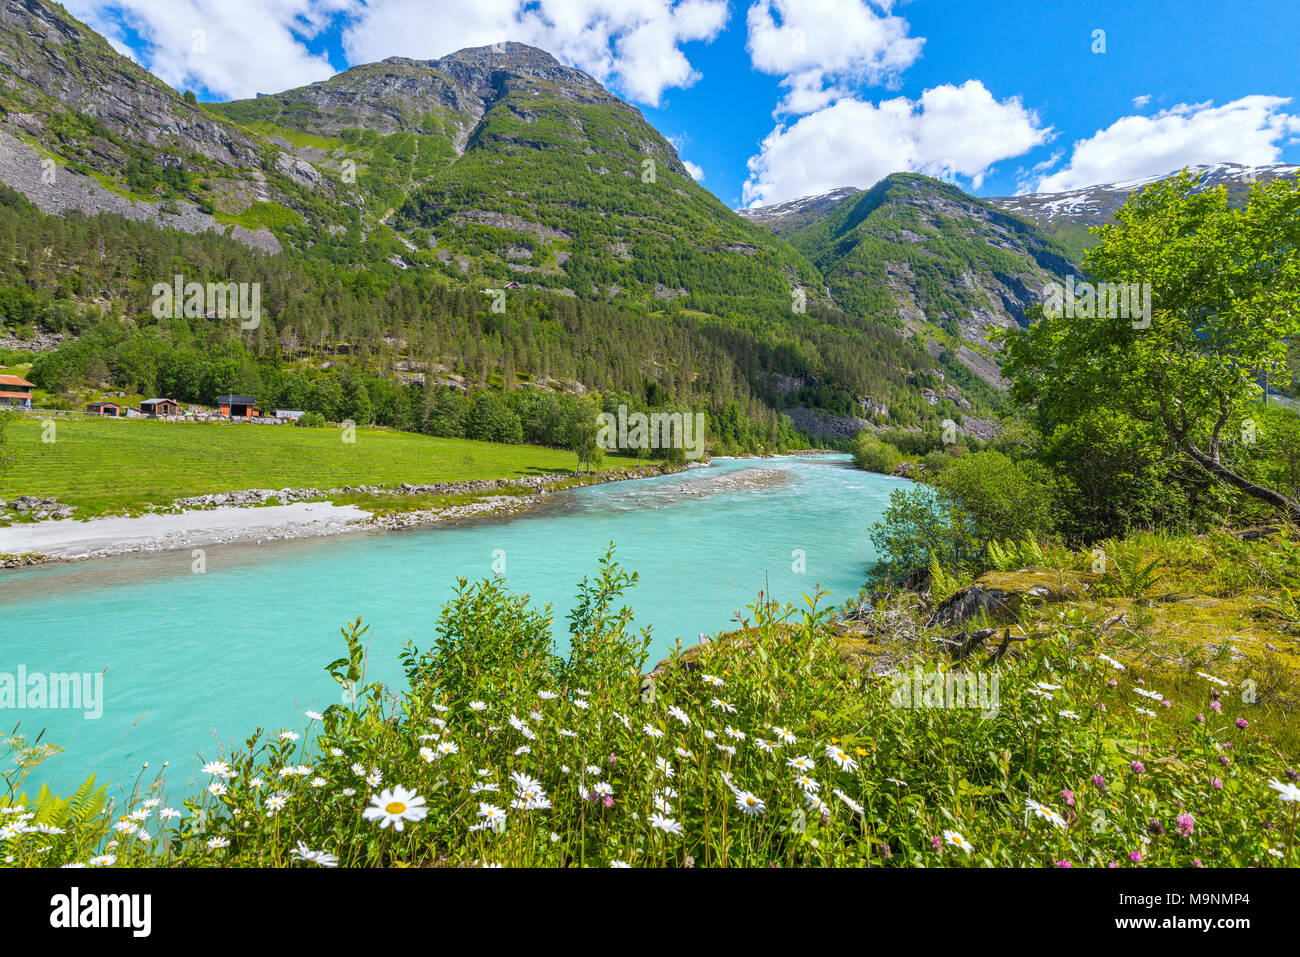 Fiori Selvatici presso la riva del fiume, Norvegia, paesaggio di Jostedalen con montagne e marguerites, Jostedalsbreen Parco Nazionale Foto Stock